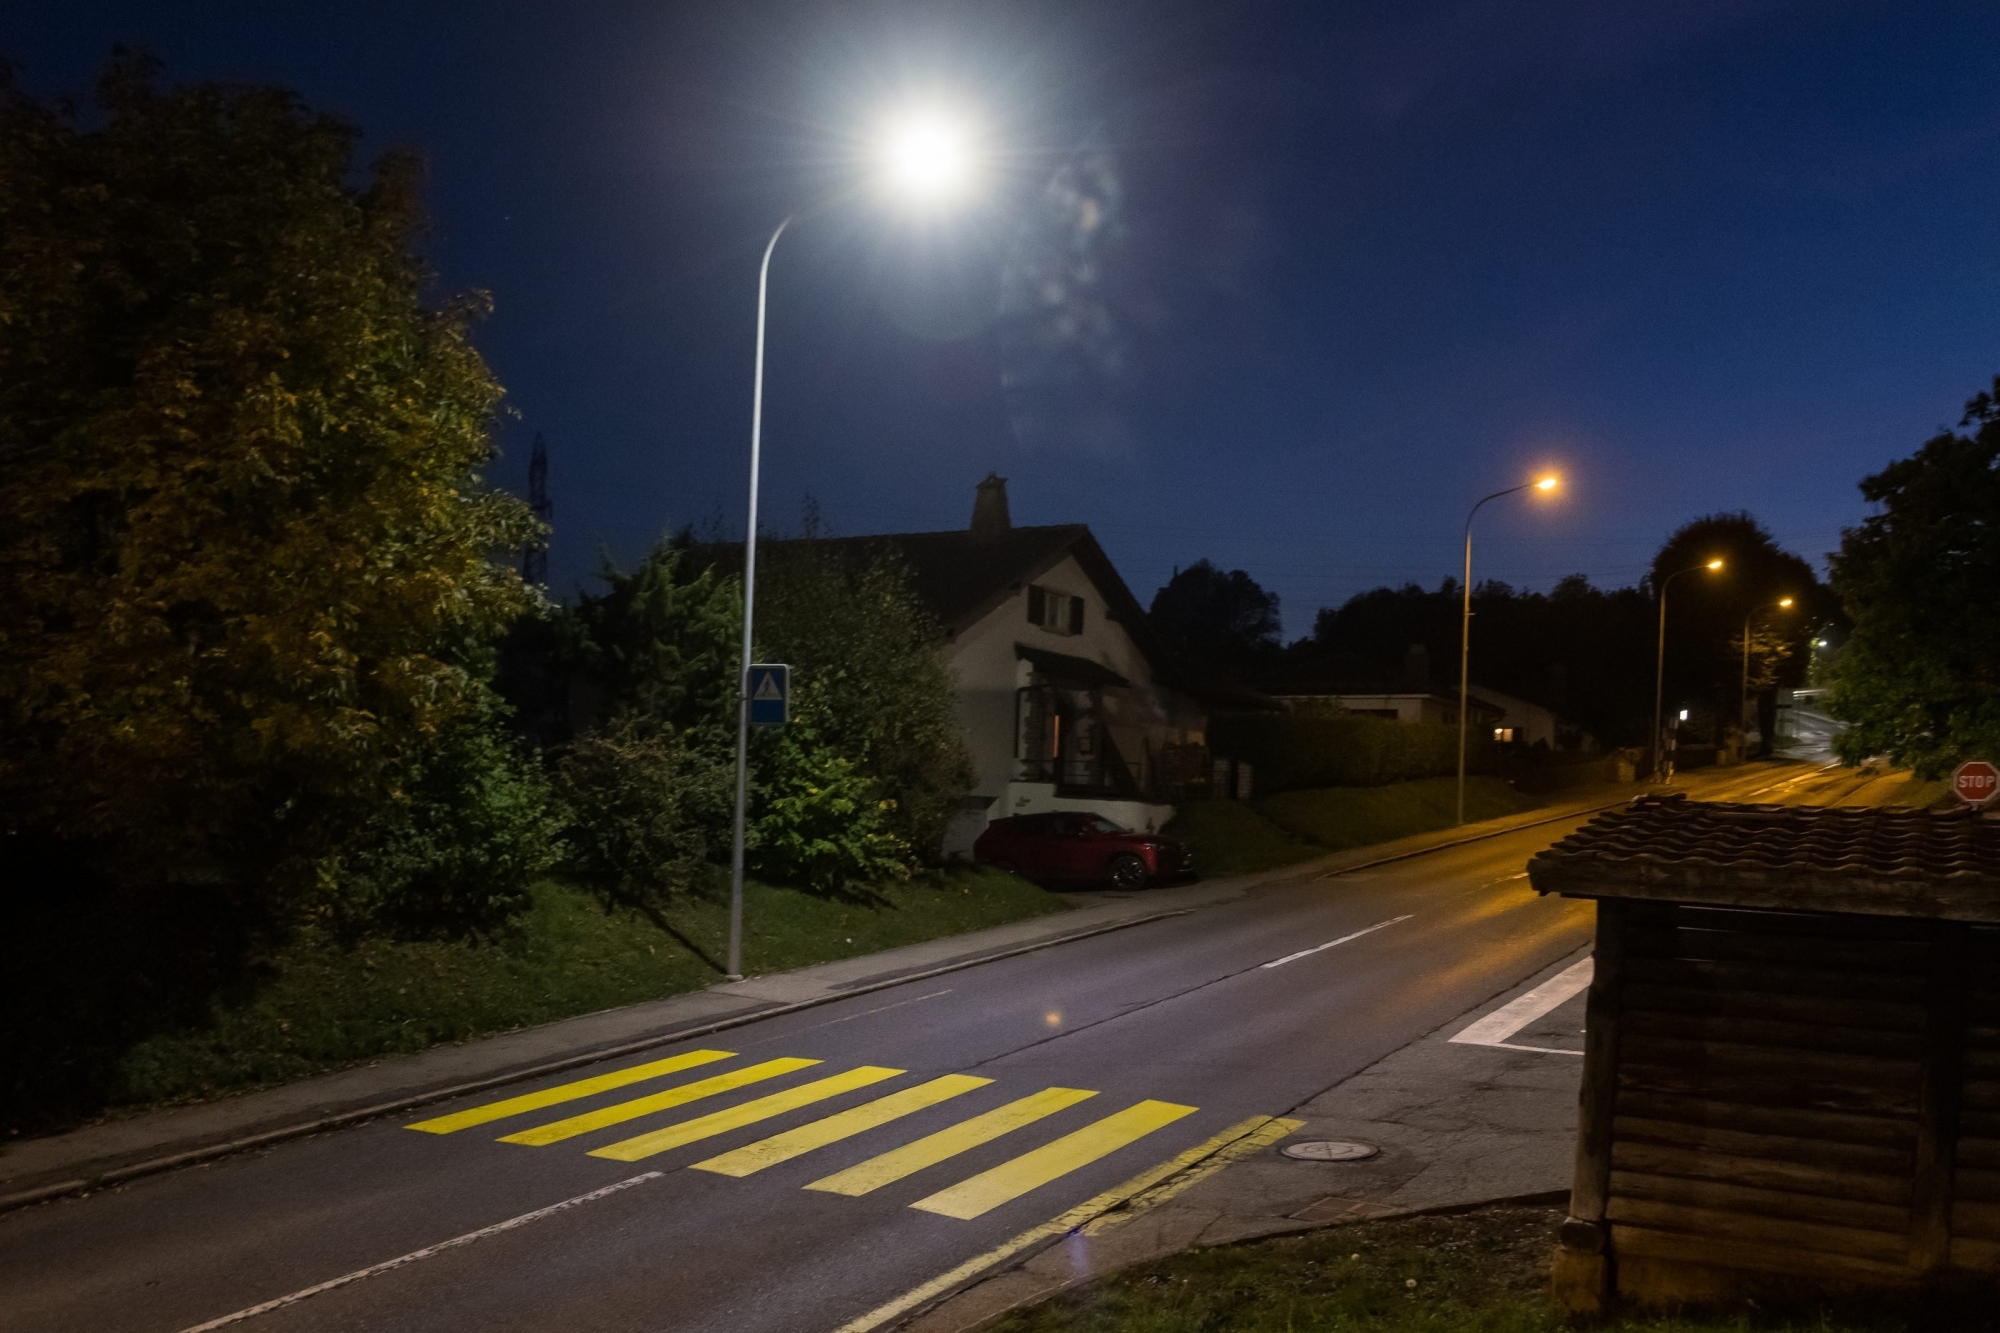 En novembre 2018, Val-de-Ruz est devenue la plus grande commune suisse qui décide d'éteindre son éclairage public la nuit. Milvignes fera-t-elle bientôt pareil? (photo d'illustration)